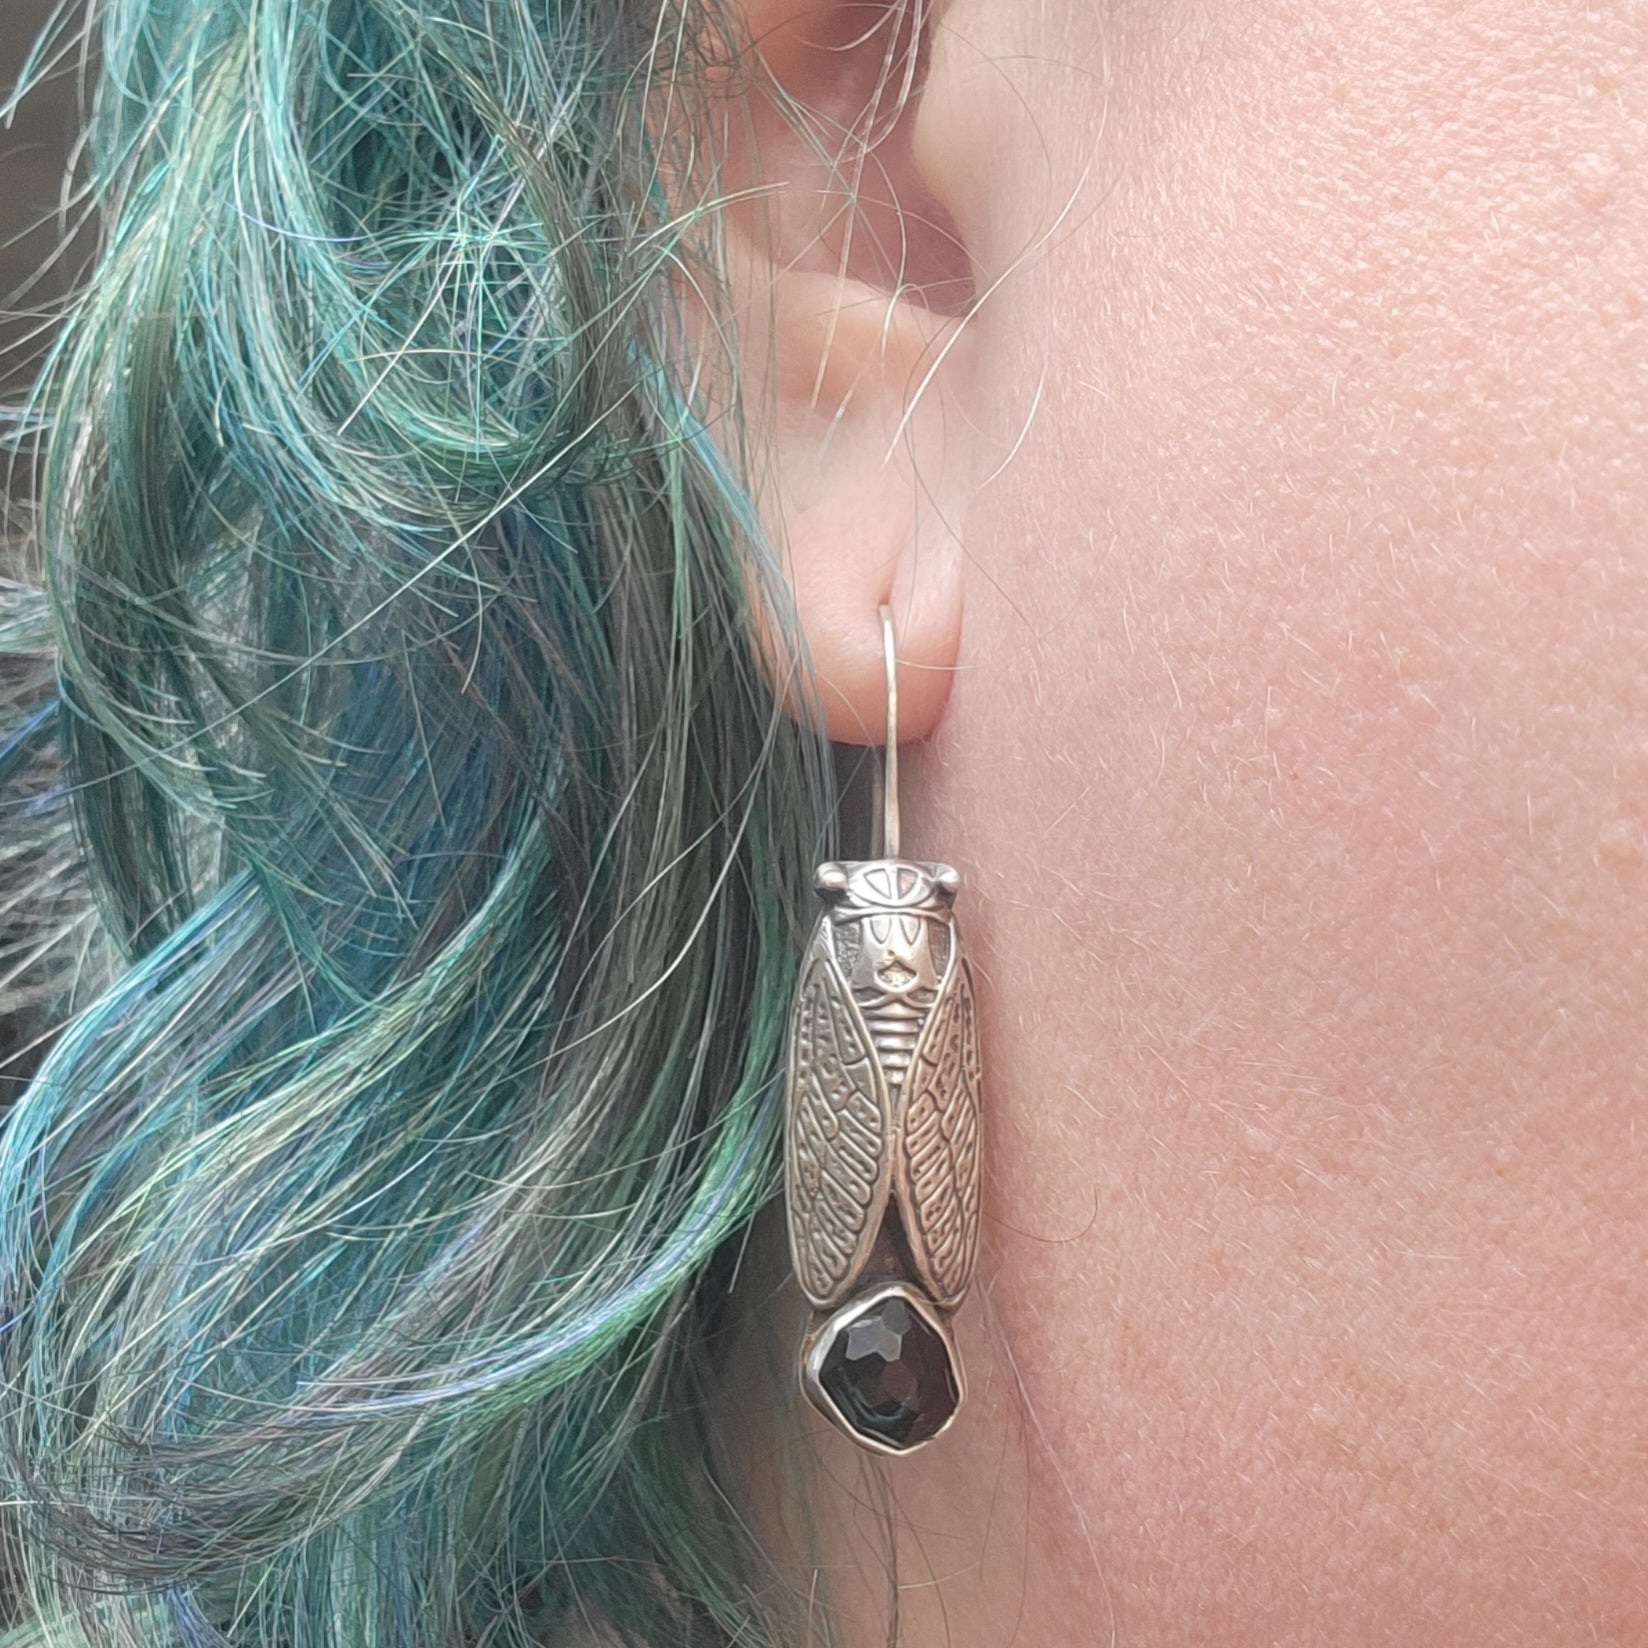 Blue Topaz Cicada Earrings in Sterling Silver